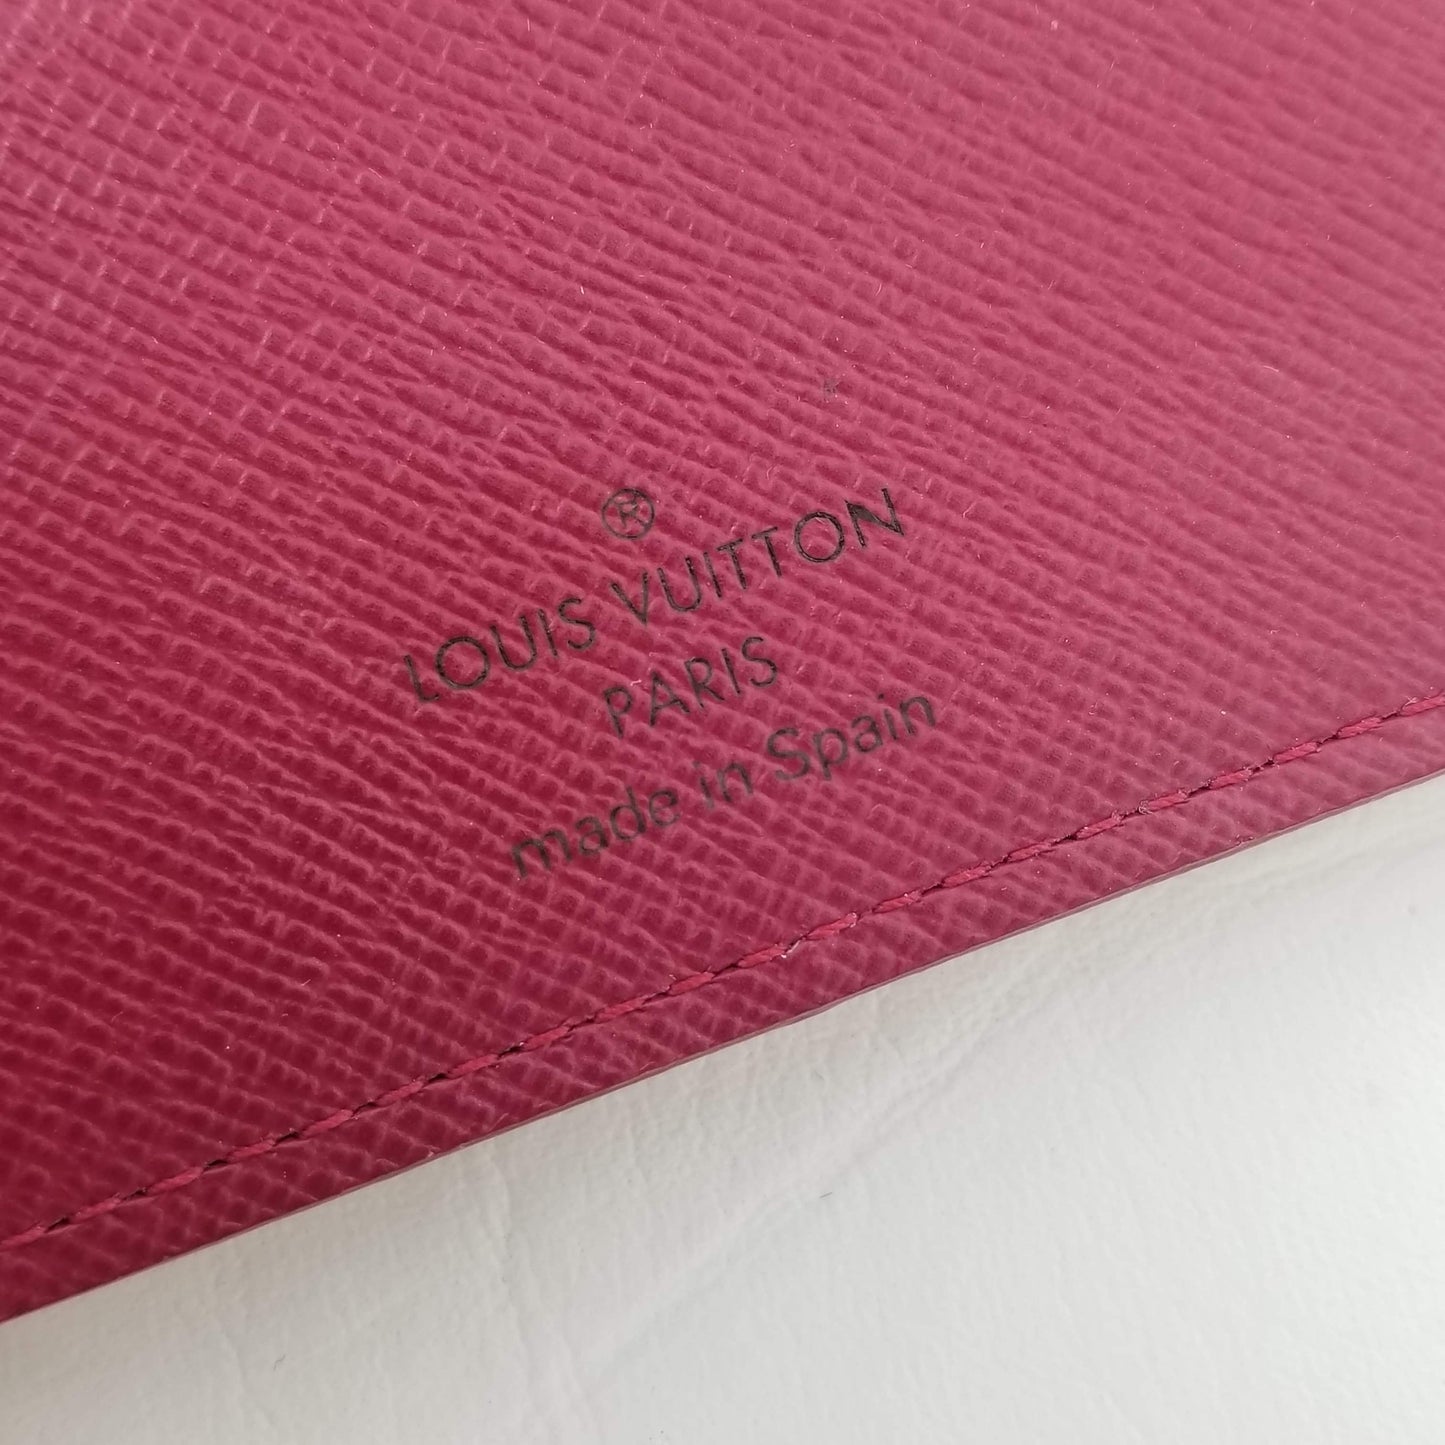 Authentic Louis Vuitton *RARE* Multicolor Portfeuil Ansolit Wallet